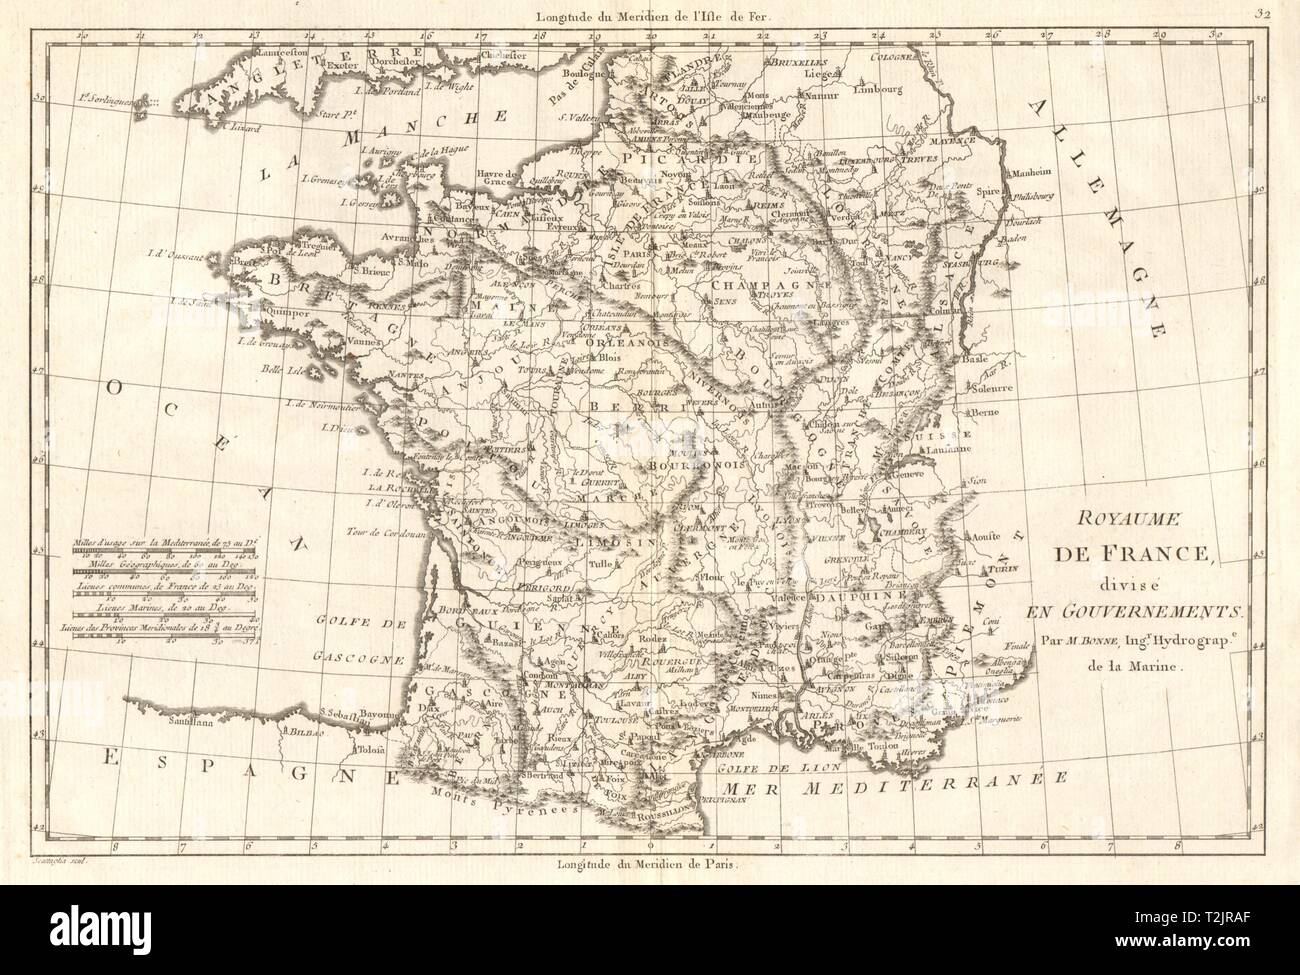 Royaume de France, divisé en Gouvernements. Les provinces. BONNE vieille carte 1789 Banque D'Images